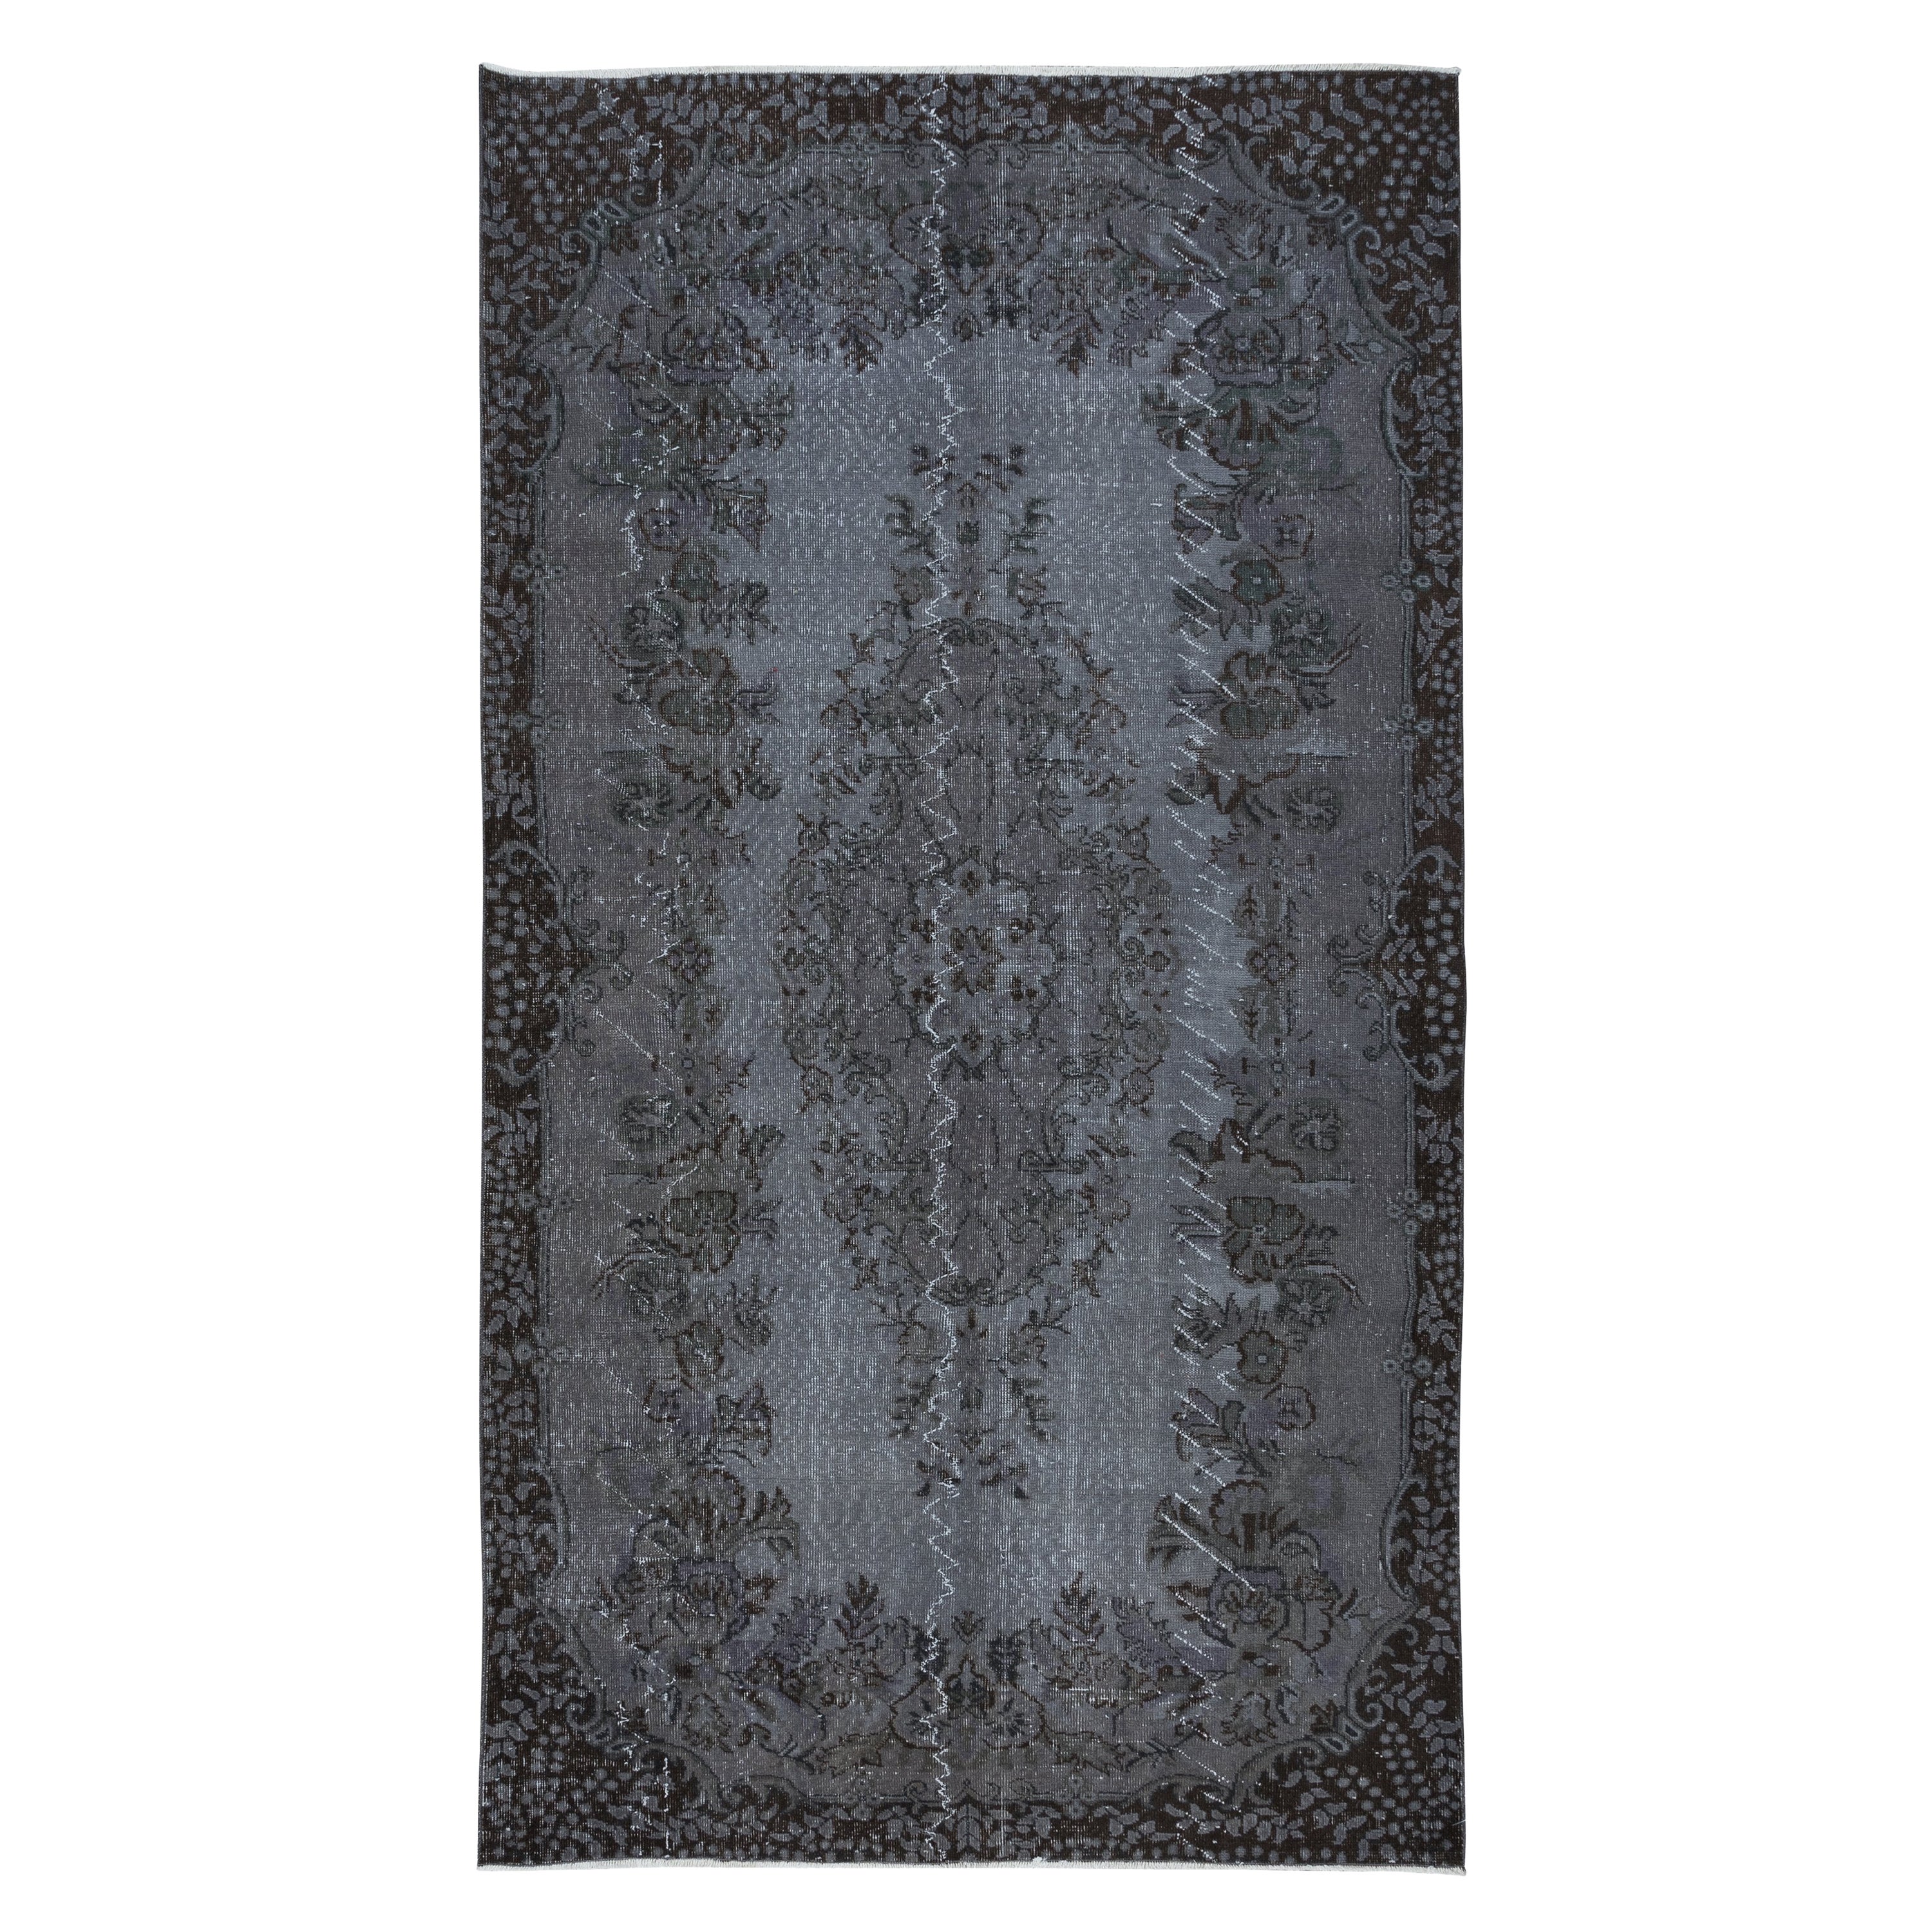 5.4x9.6 Ft Grauer handgefertigter türkischer Teppich mit Medaillon, ideal für moderne Innenräume im Angebot